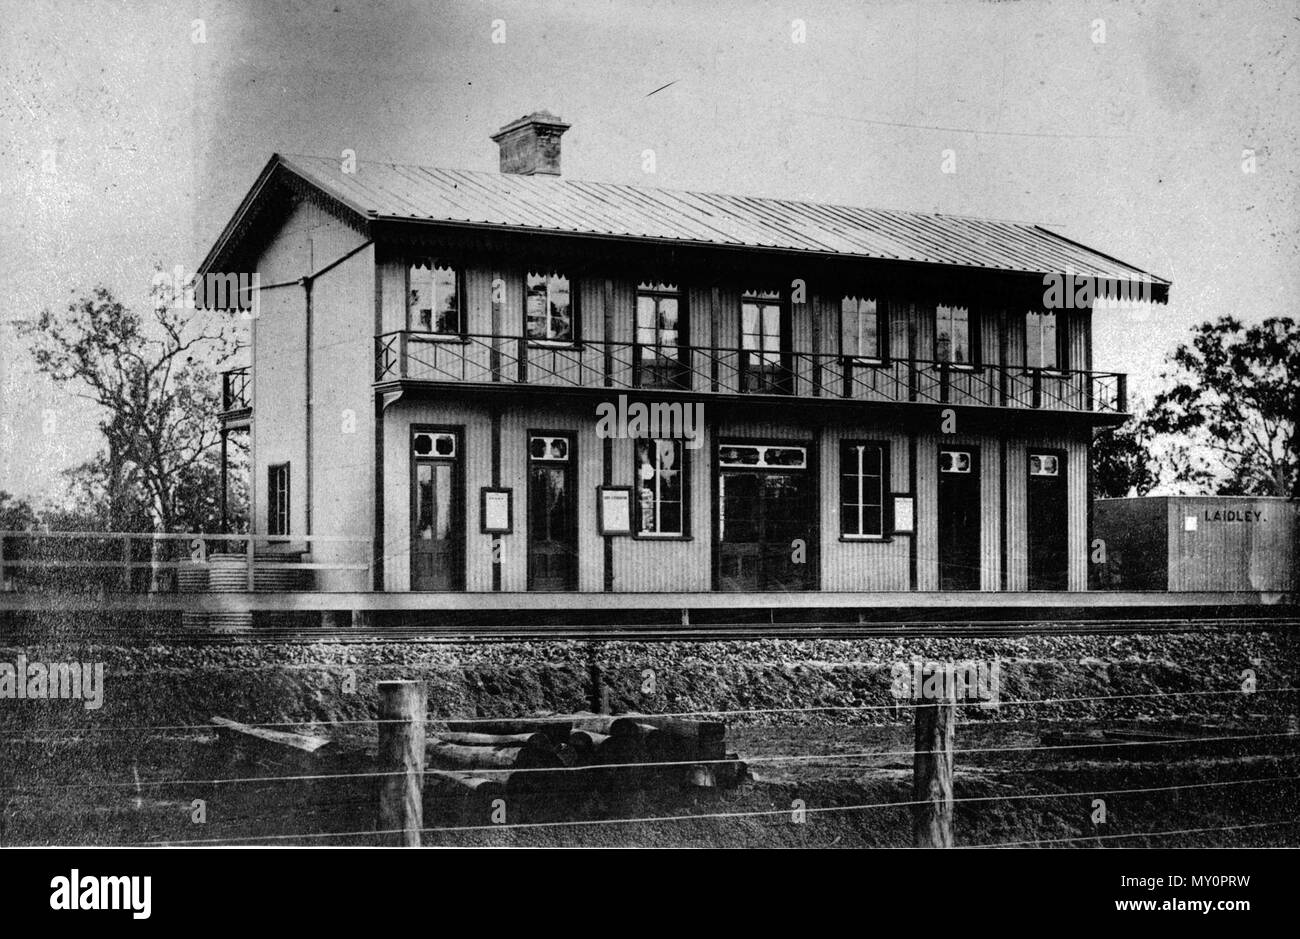 Stazione ferroviaria, Laidley. Laidley è una cittadina rurale 65 km ad ovest dal centro di Brisbane. La città è stata analizzata in 1858 in corrispondenza di un luogo di sosta sulla strada da Ipswich di Toowoomba. Named Laidley, la città ha dimostrato di essere mal posizionato quando la linea ferroviaria aperto nel 1866, come attività spostato verso la stazione ferroviaria. "Nuova" Laidley ha superato il vecchio Laidley, dove i turisti potranno trovare ora un villaggio di pionieri. Laidley prosperò nei primi anni del Novecento. Come una città importante nel fiorente Lockyer Valley, uno del Queensland di maggior successo distretti agricoli, ha visto una notevole crescita e attività di sviluppo assortiti Foto Stock